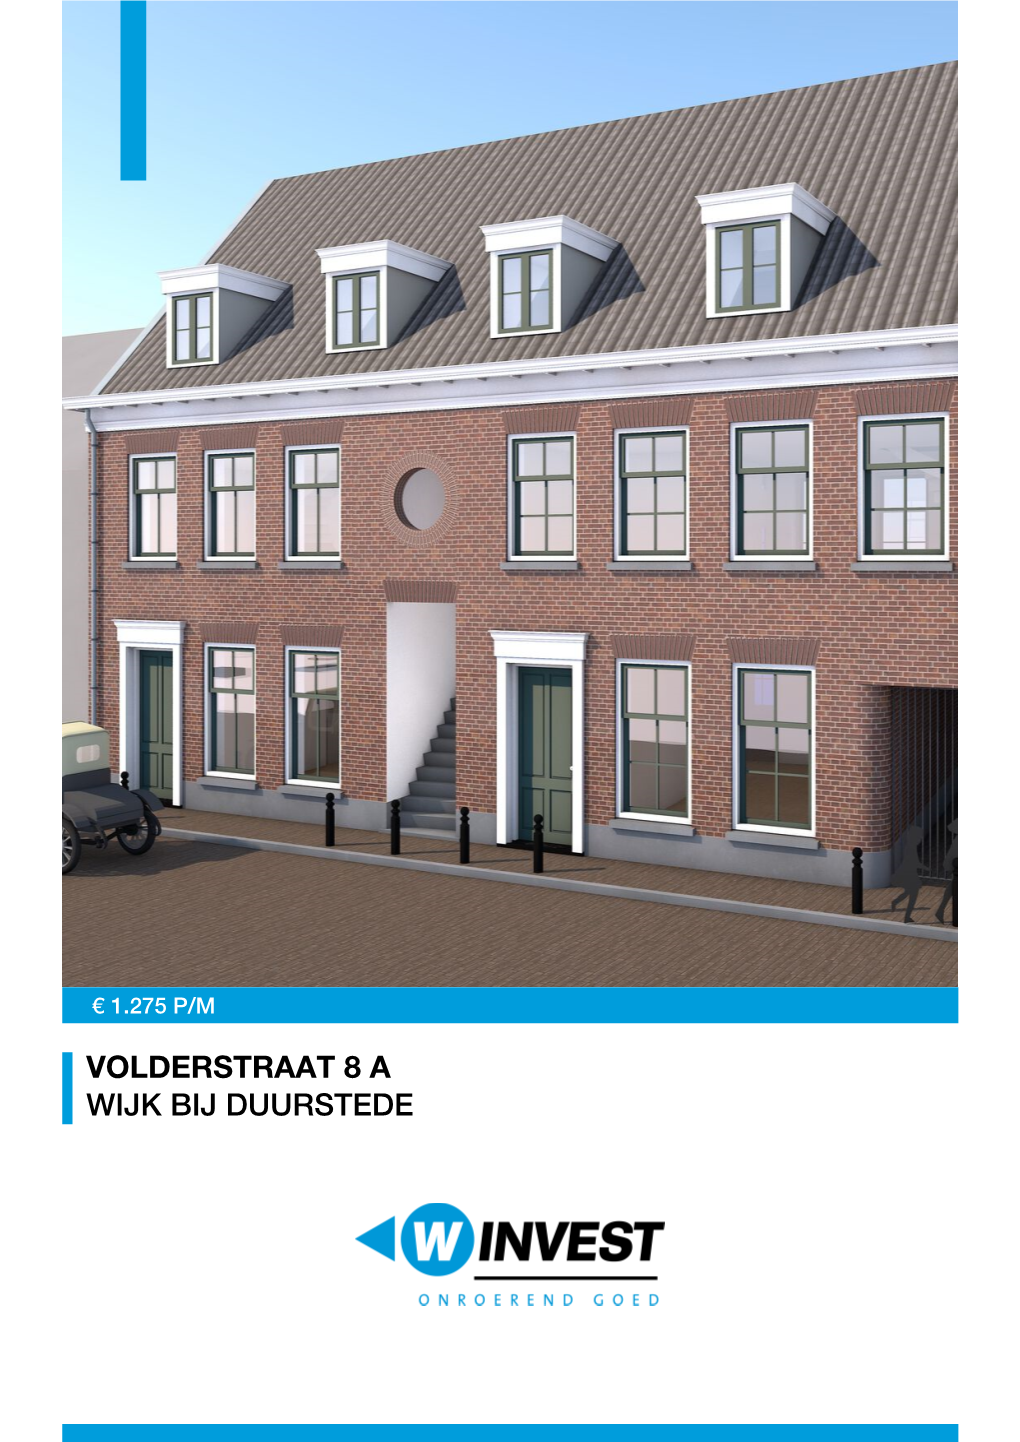 TE HUUR: Volderstraat 8 a in Wijk Bij Duurstede Voor € 1.275